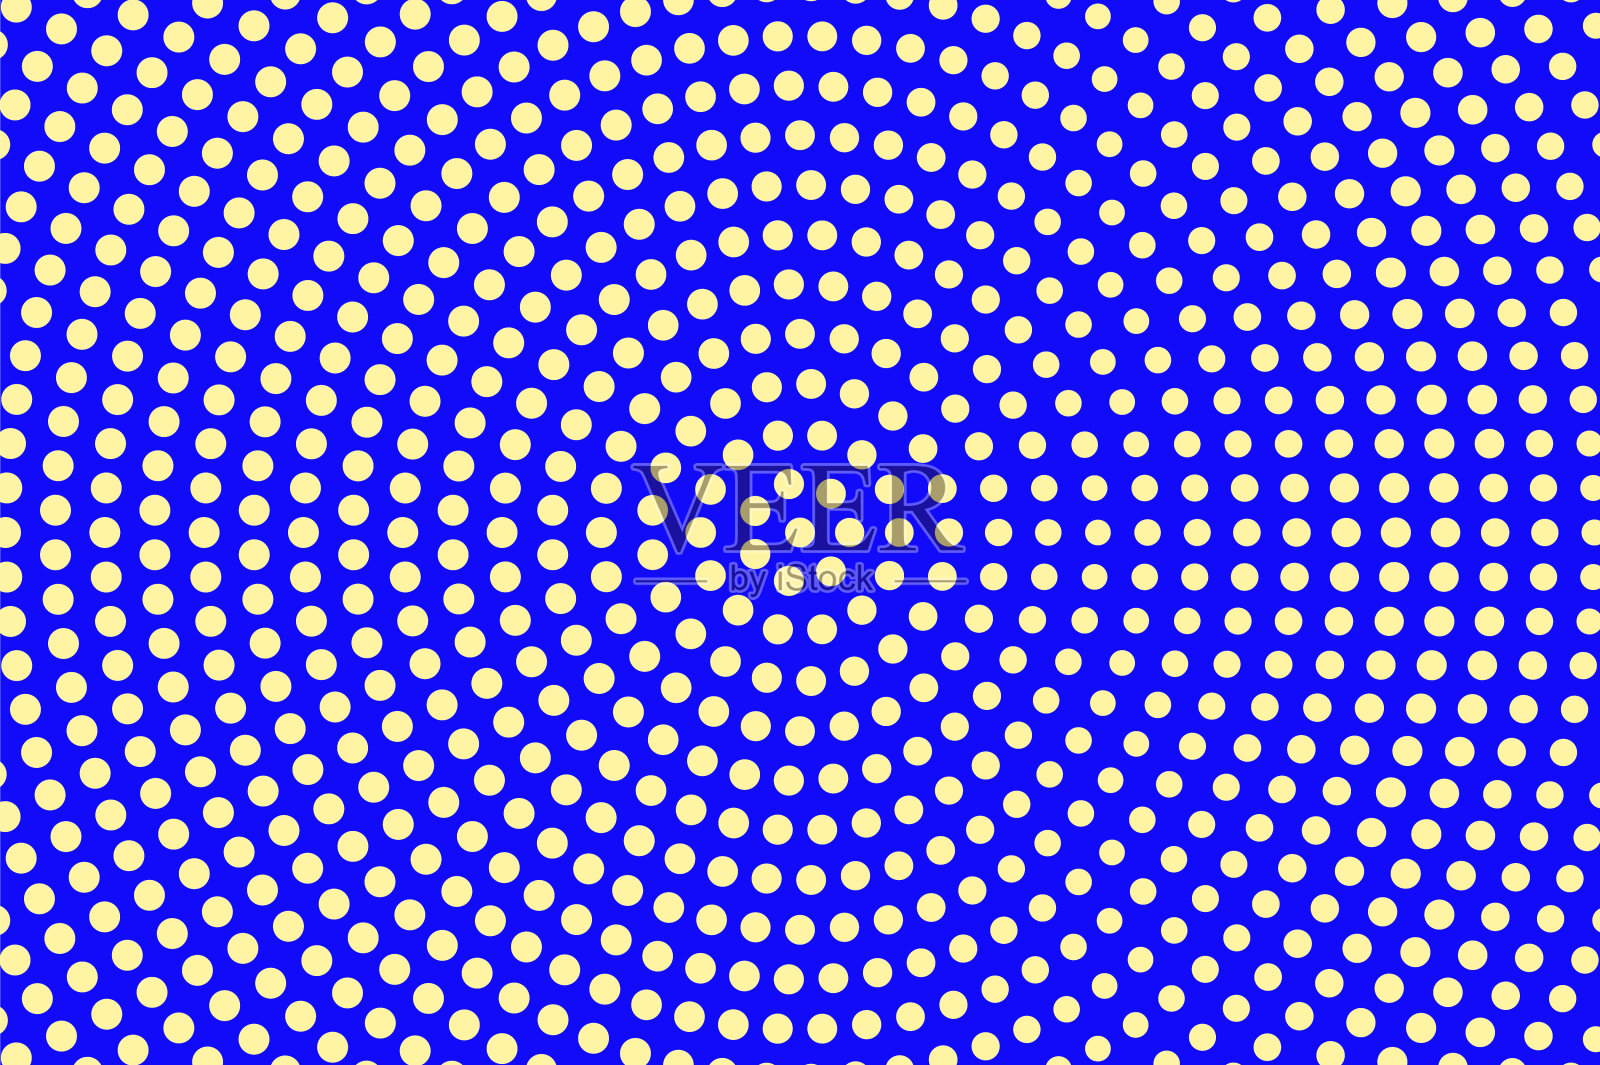 蓝黄色的虚线半色调。超大放射状虚线图案。半色调矢量背景。插画图片素材